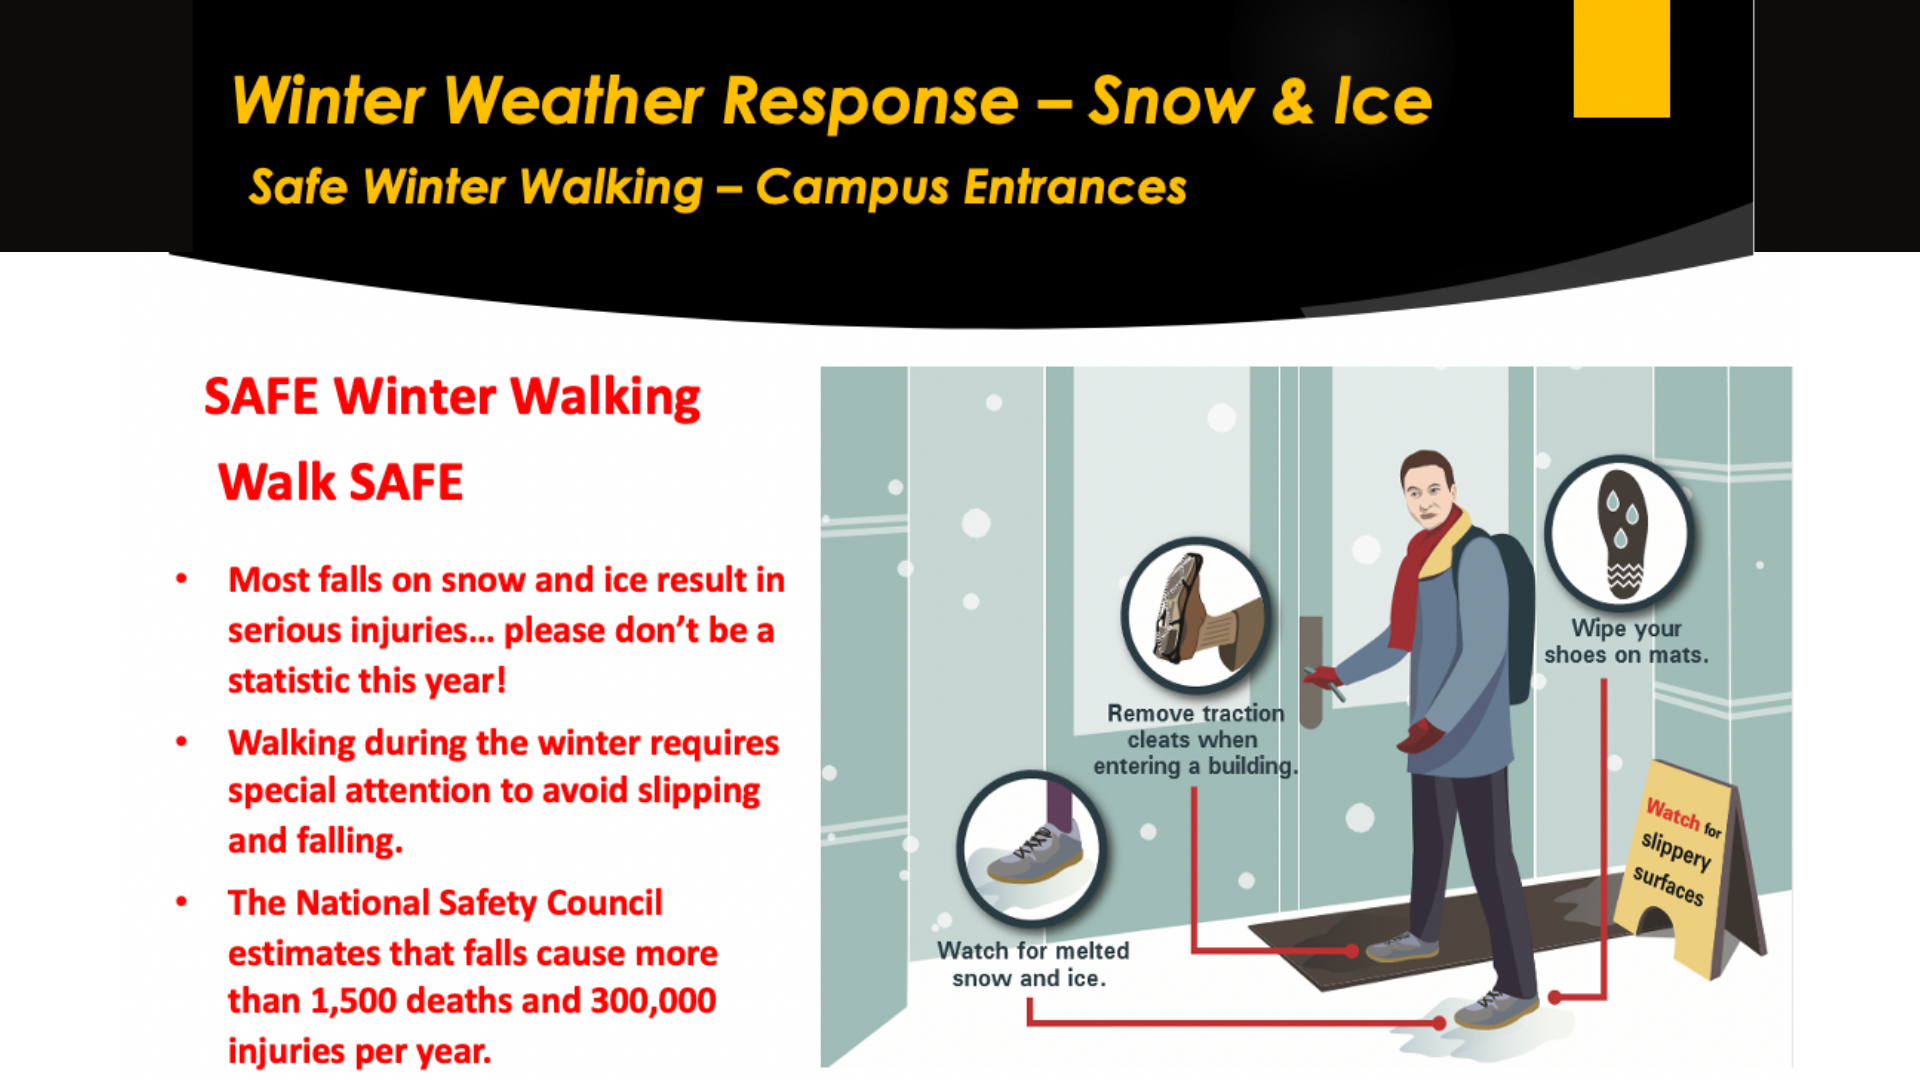 Safe Winter Walking